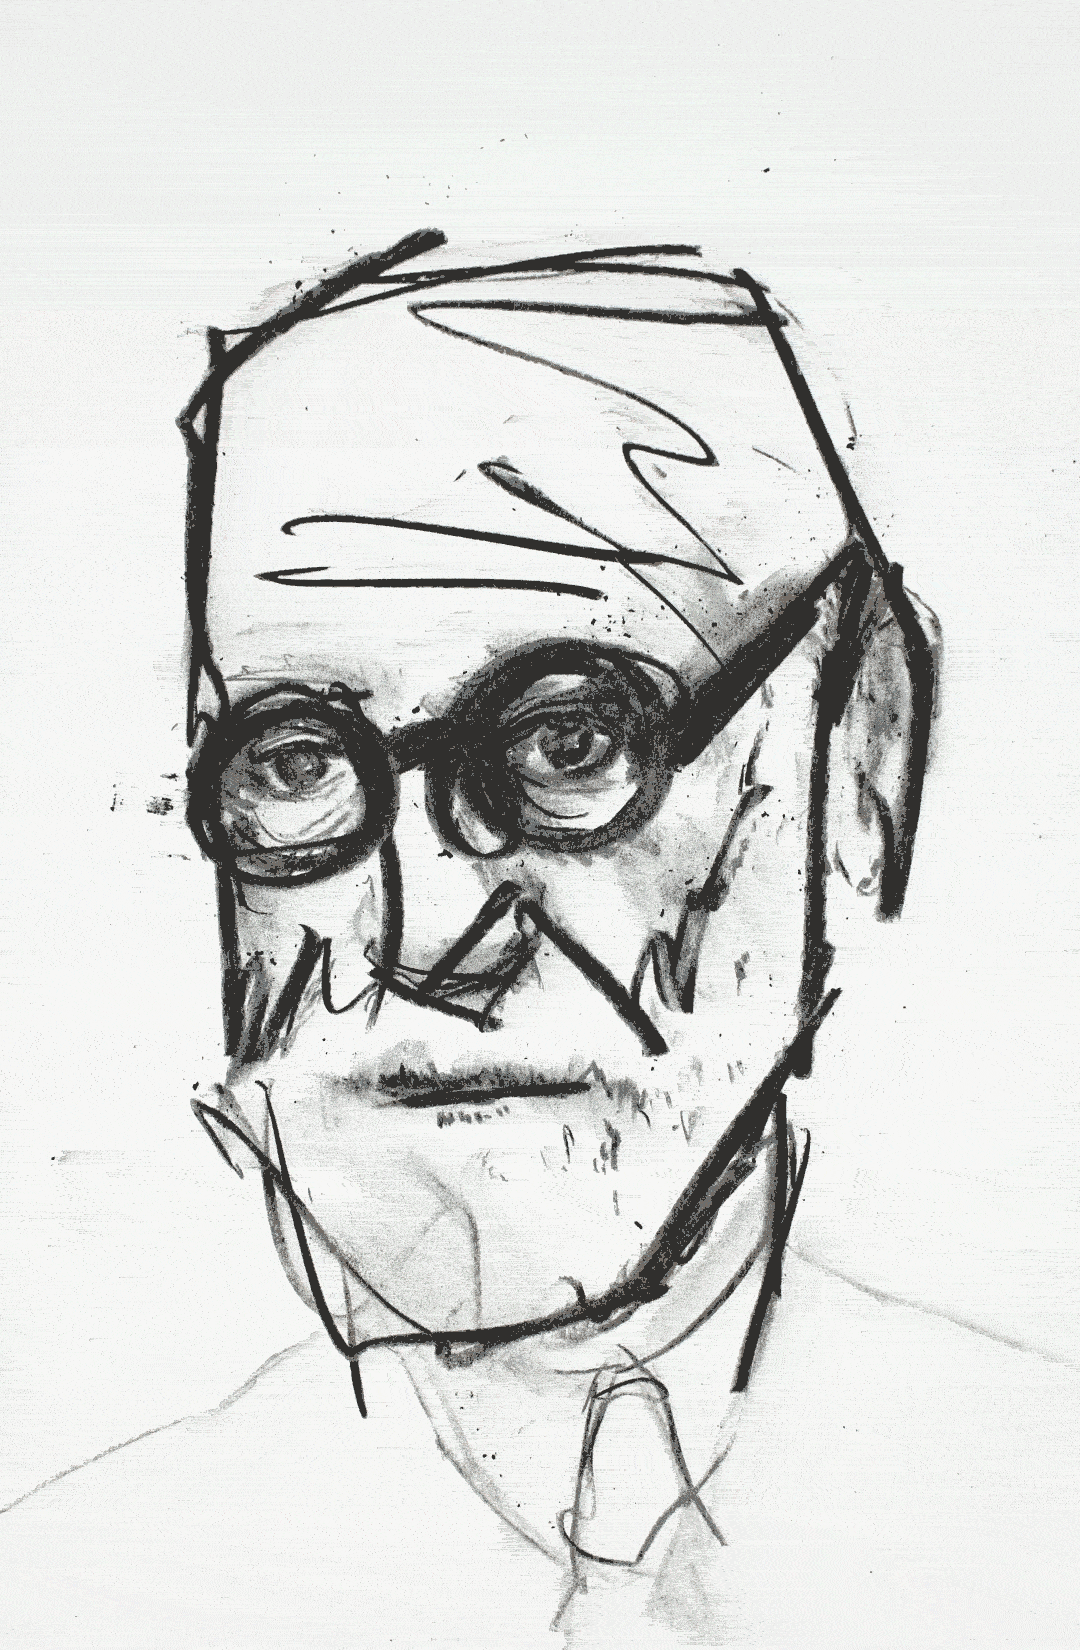 Freud Hand Drawn Animation GIF Find On GIFER